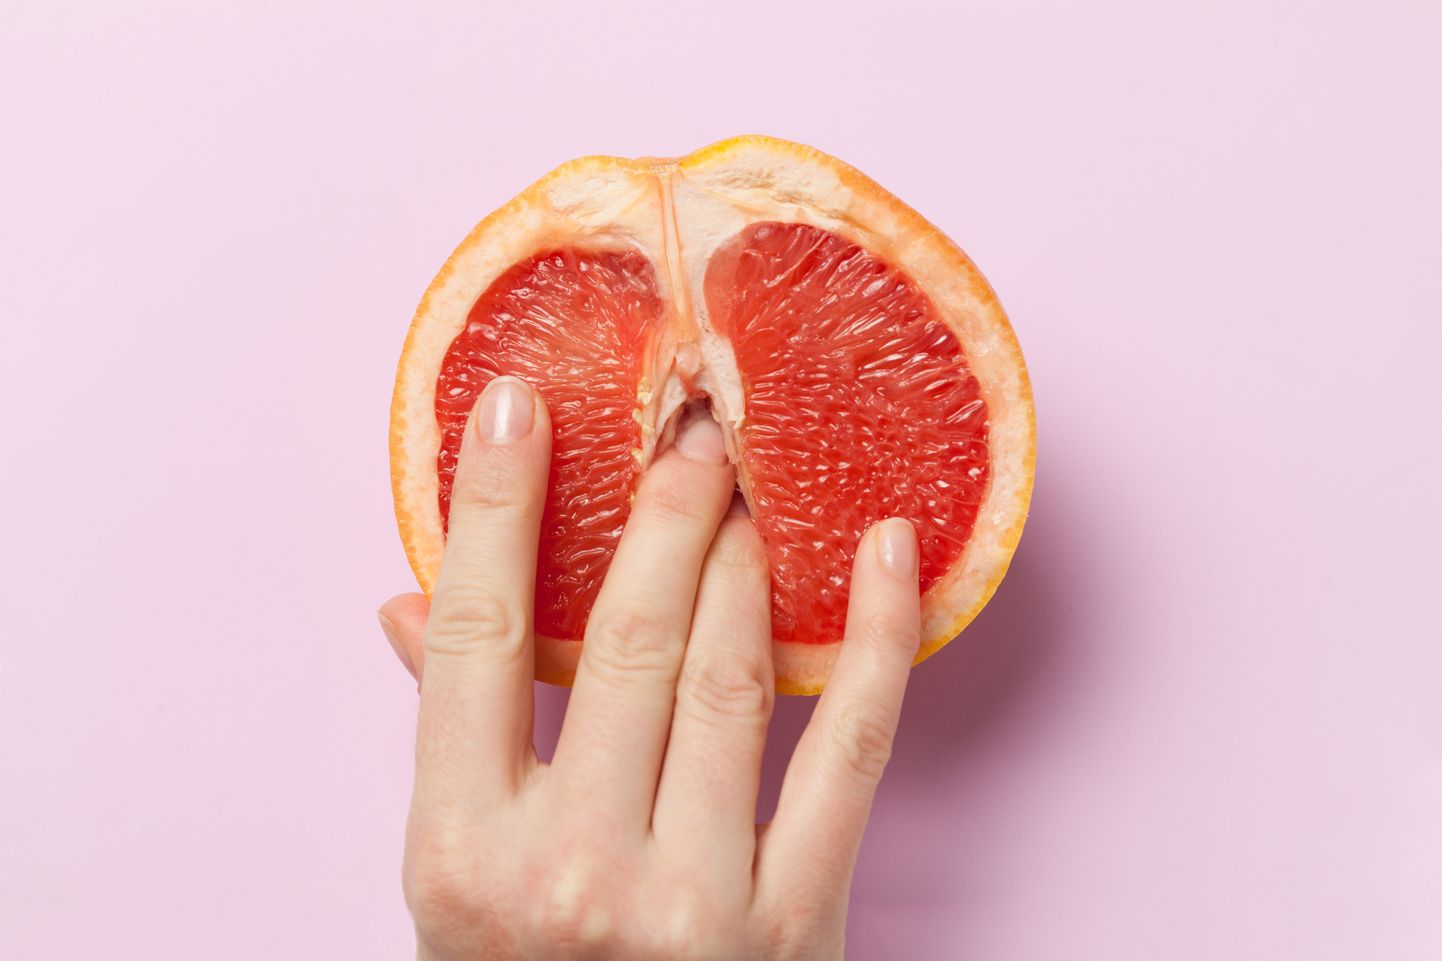 Пальцы в грейпфруте, а вы что подумали? Иллюстративное фото.